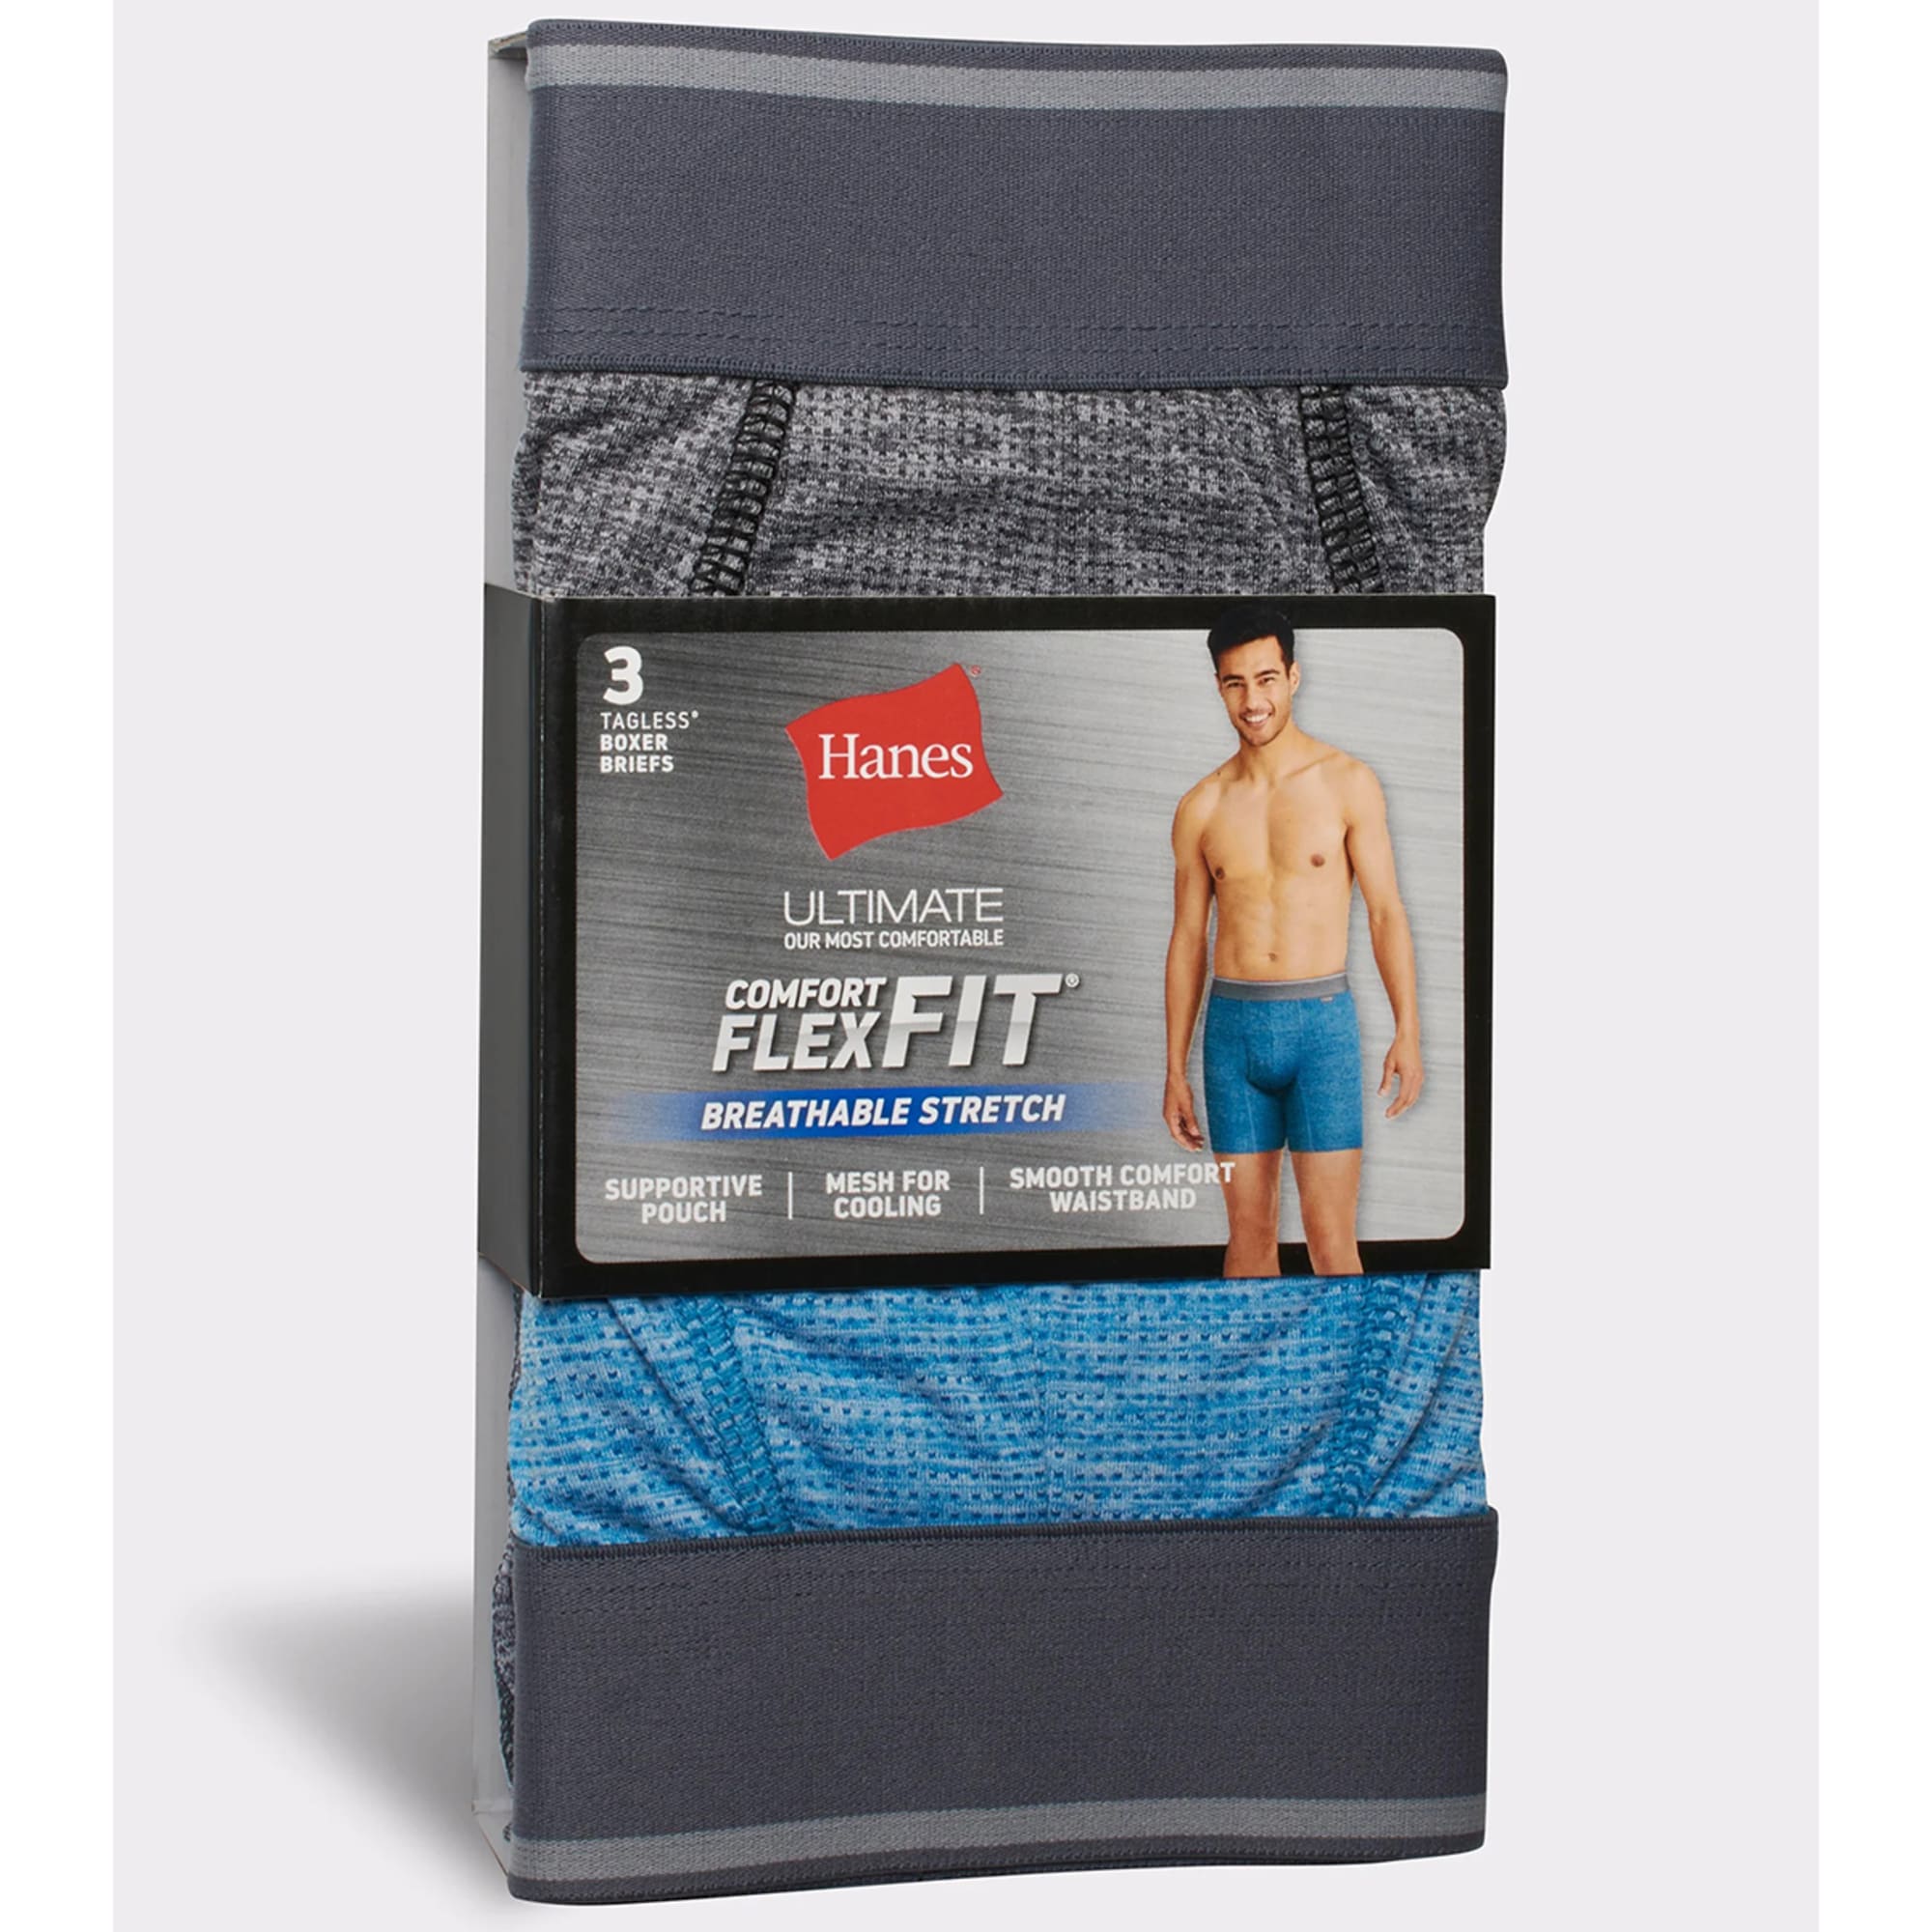 HANES Ultimate Men's Comfort Flex Fit Boxer Briefs, 3-Pack